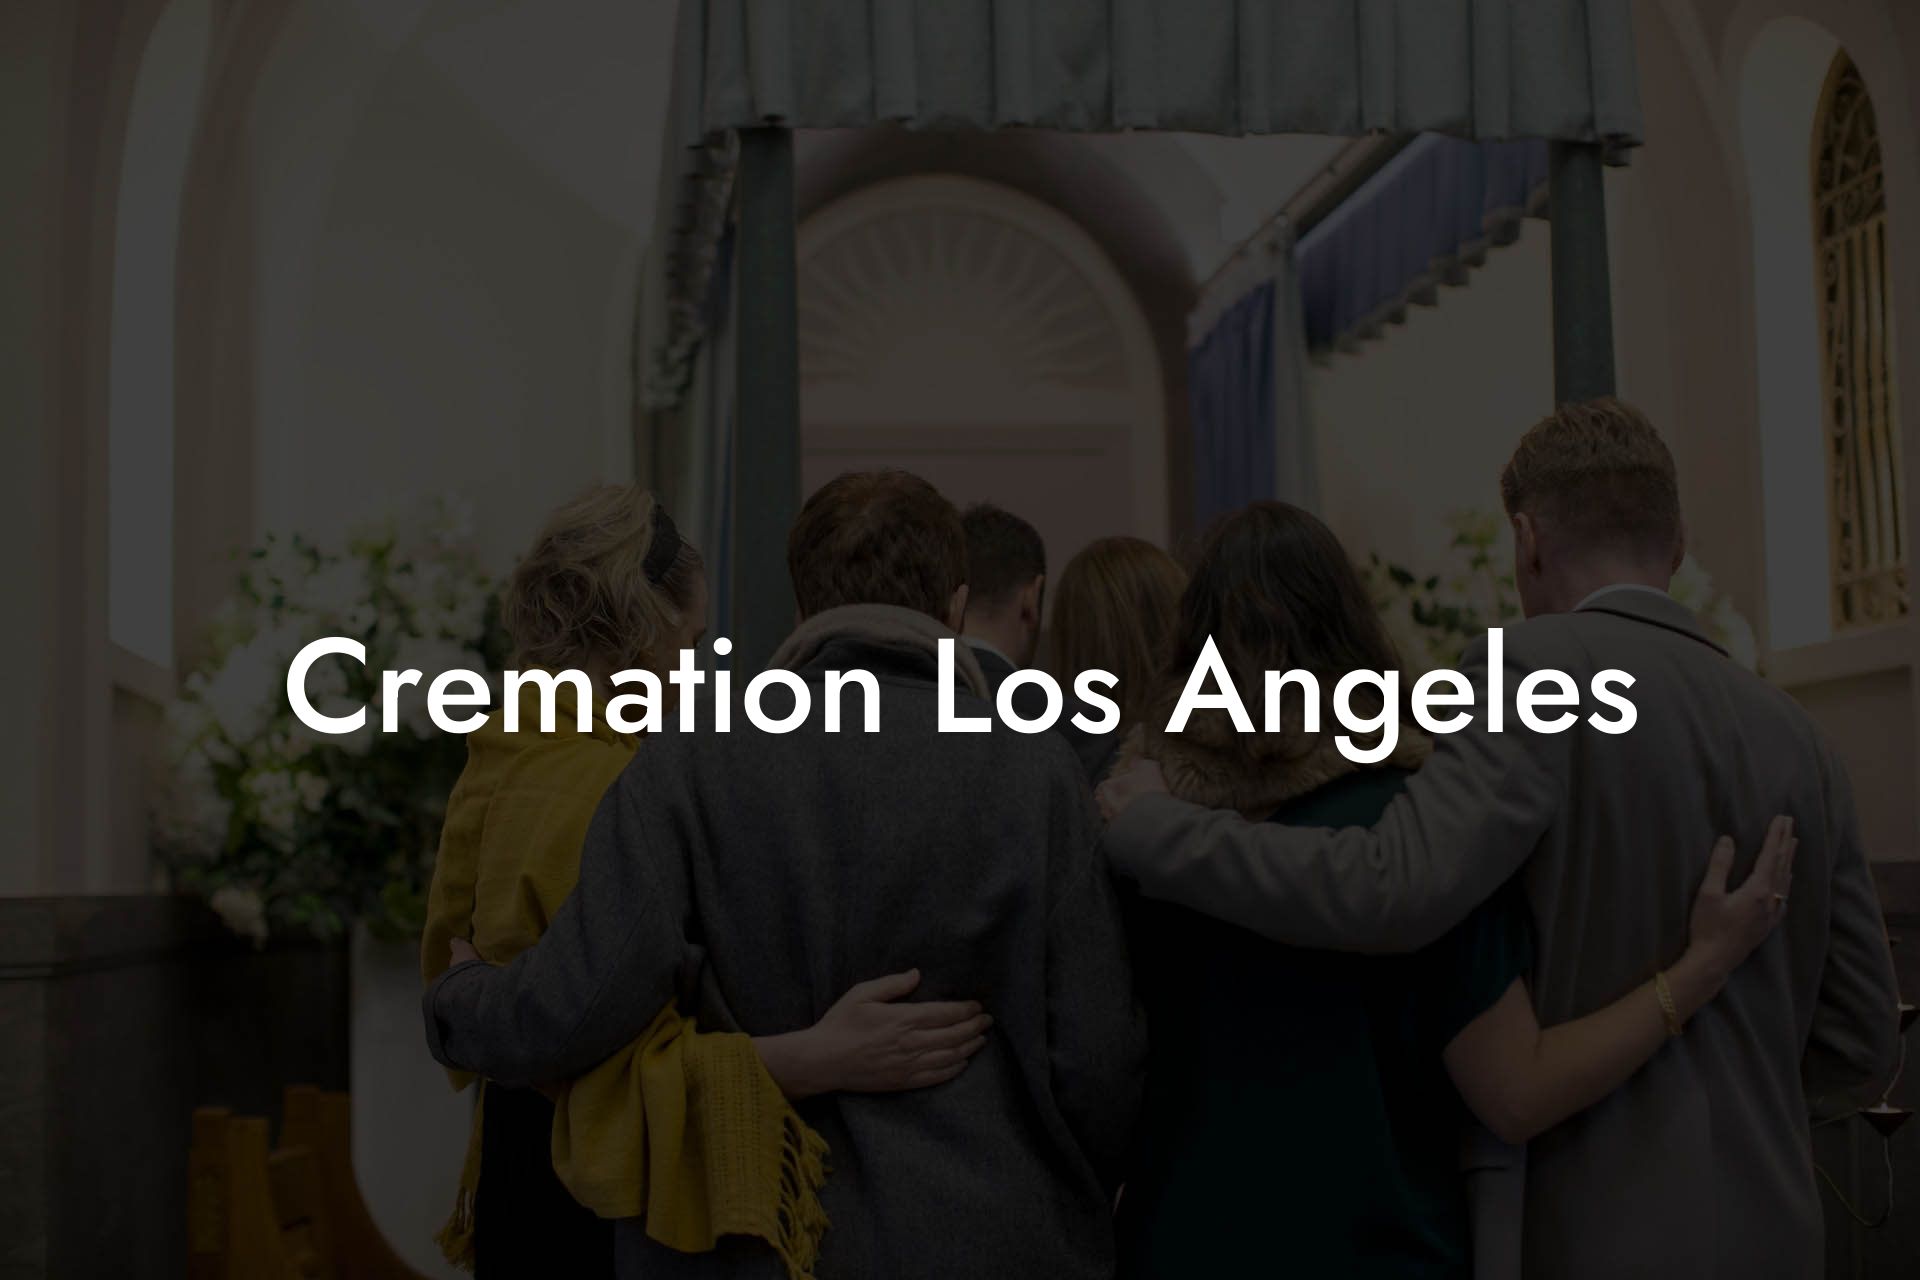 Cremation Los Angeles